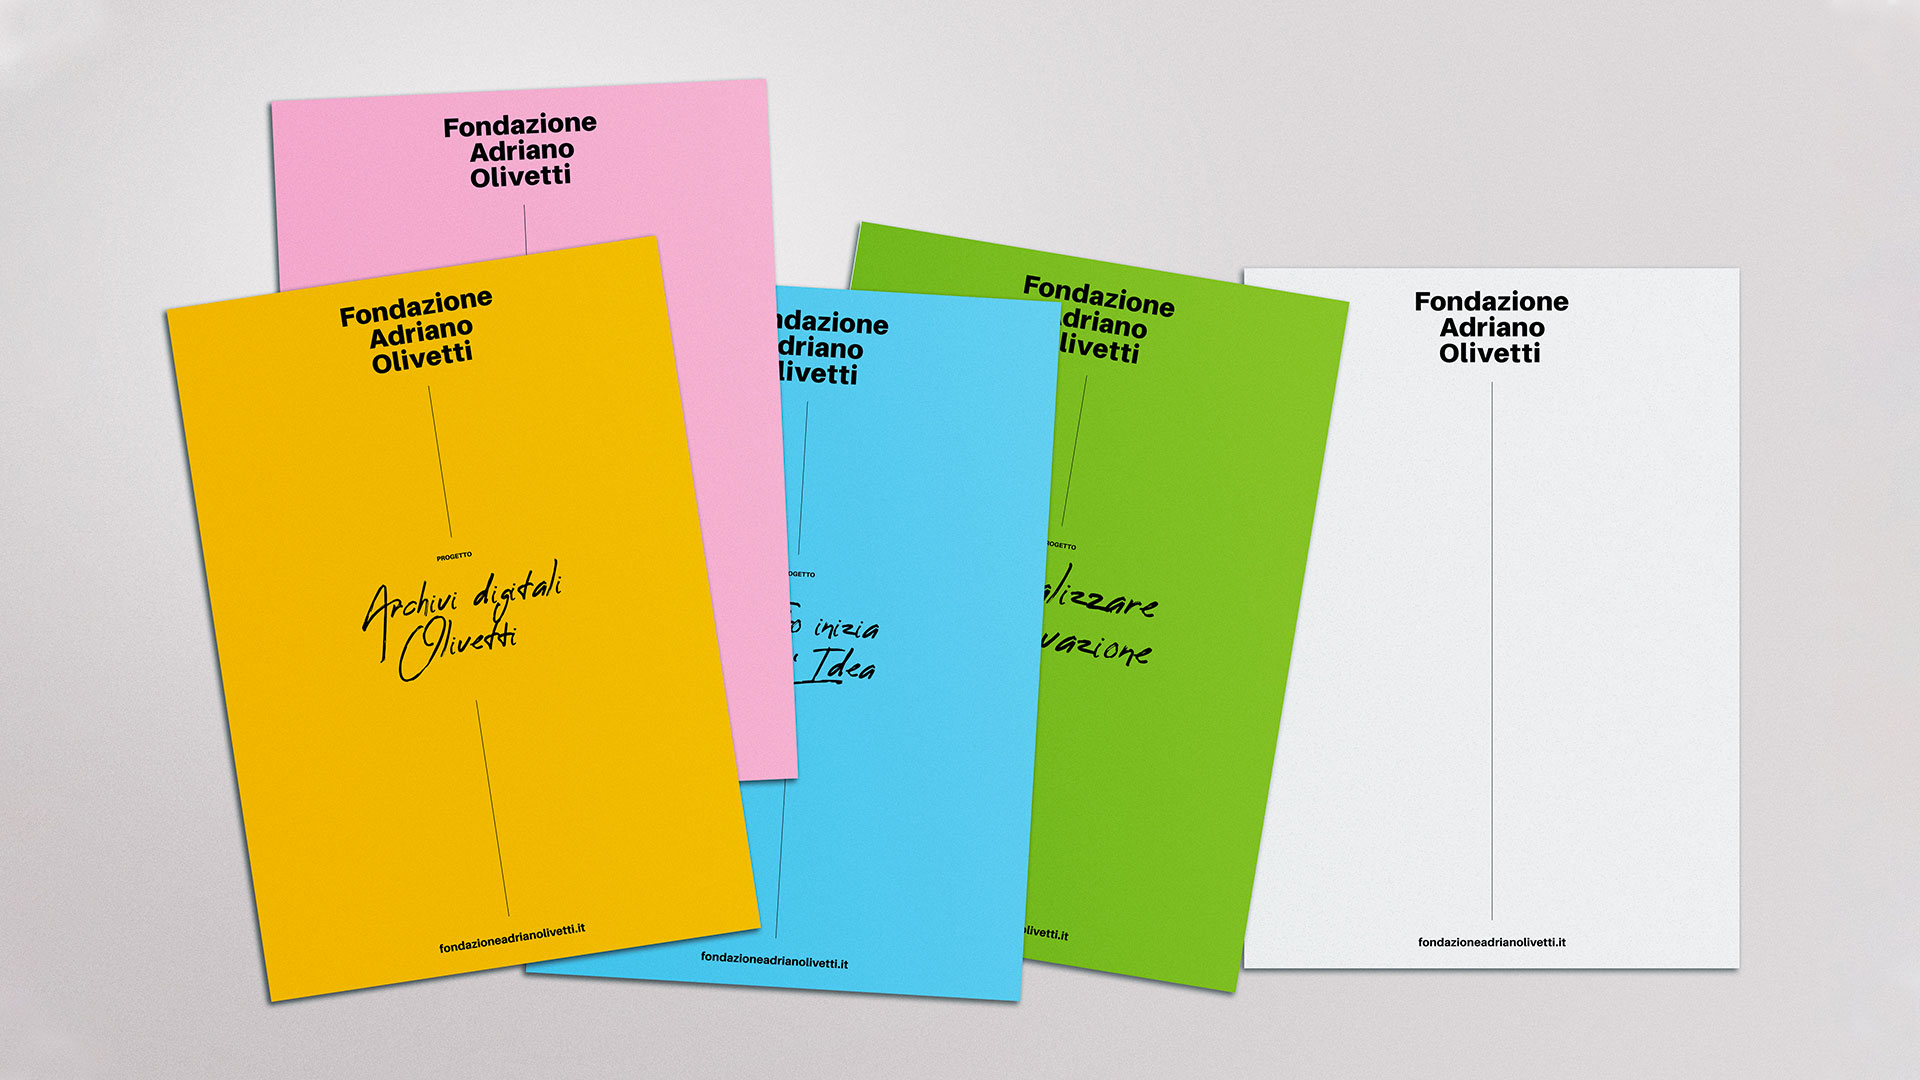 Fondazione Adriano Olivetti – Folders